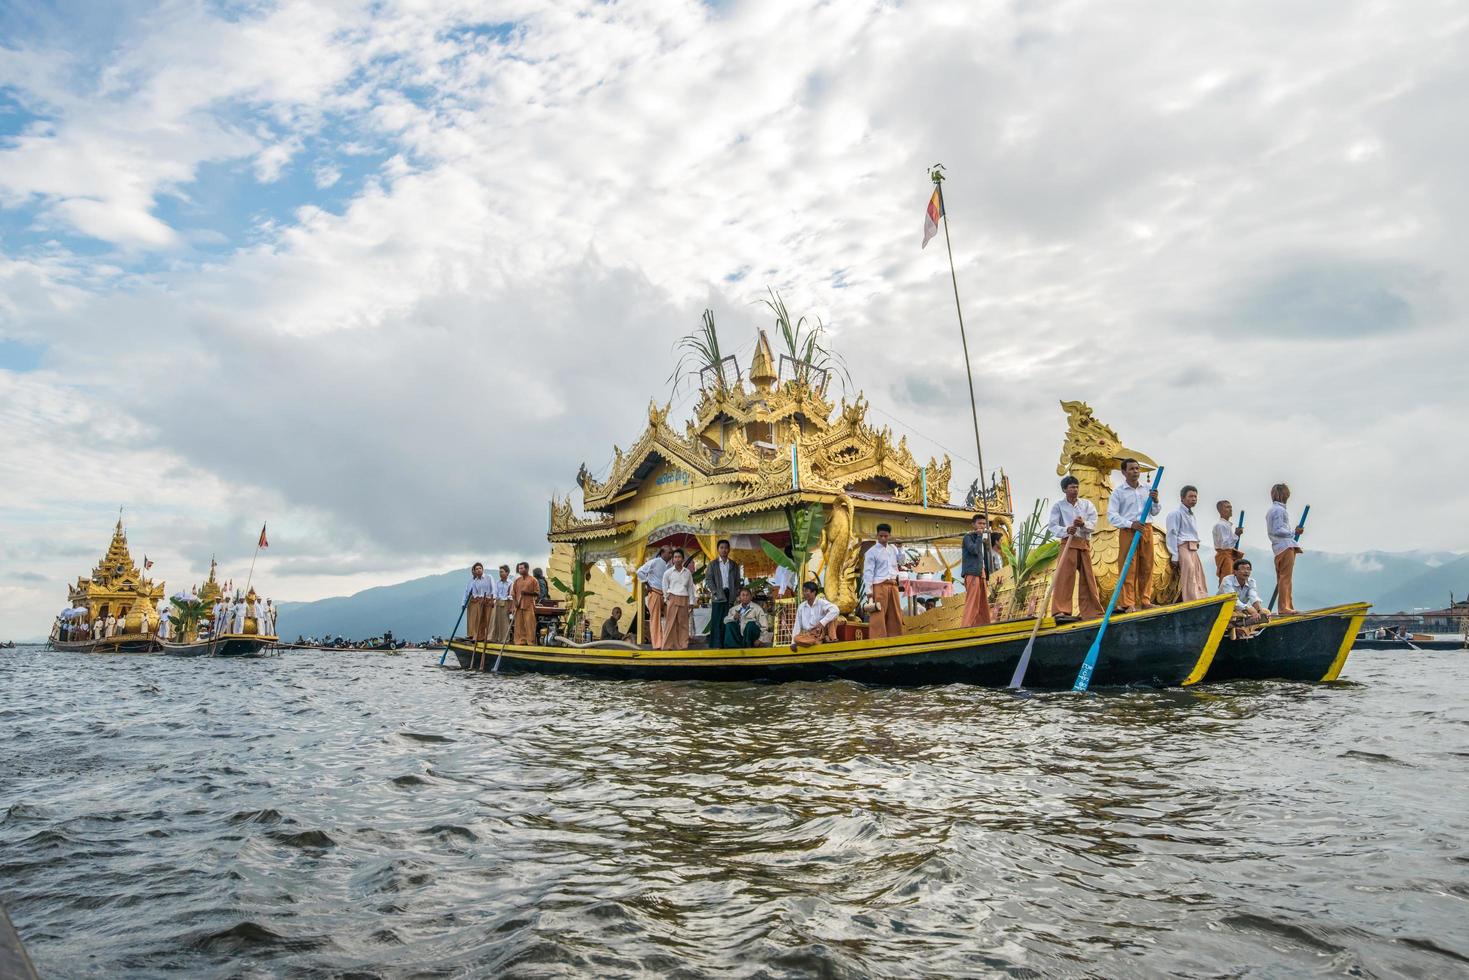 inle-see, myanmar - 6. oktober 2014 - das festival der phaung daw oo-pagode am inle-see wird einmal im jahr zeremoniell um den see gerudert. foto